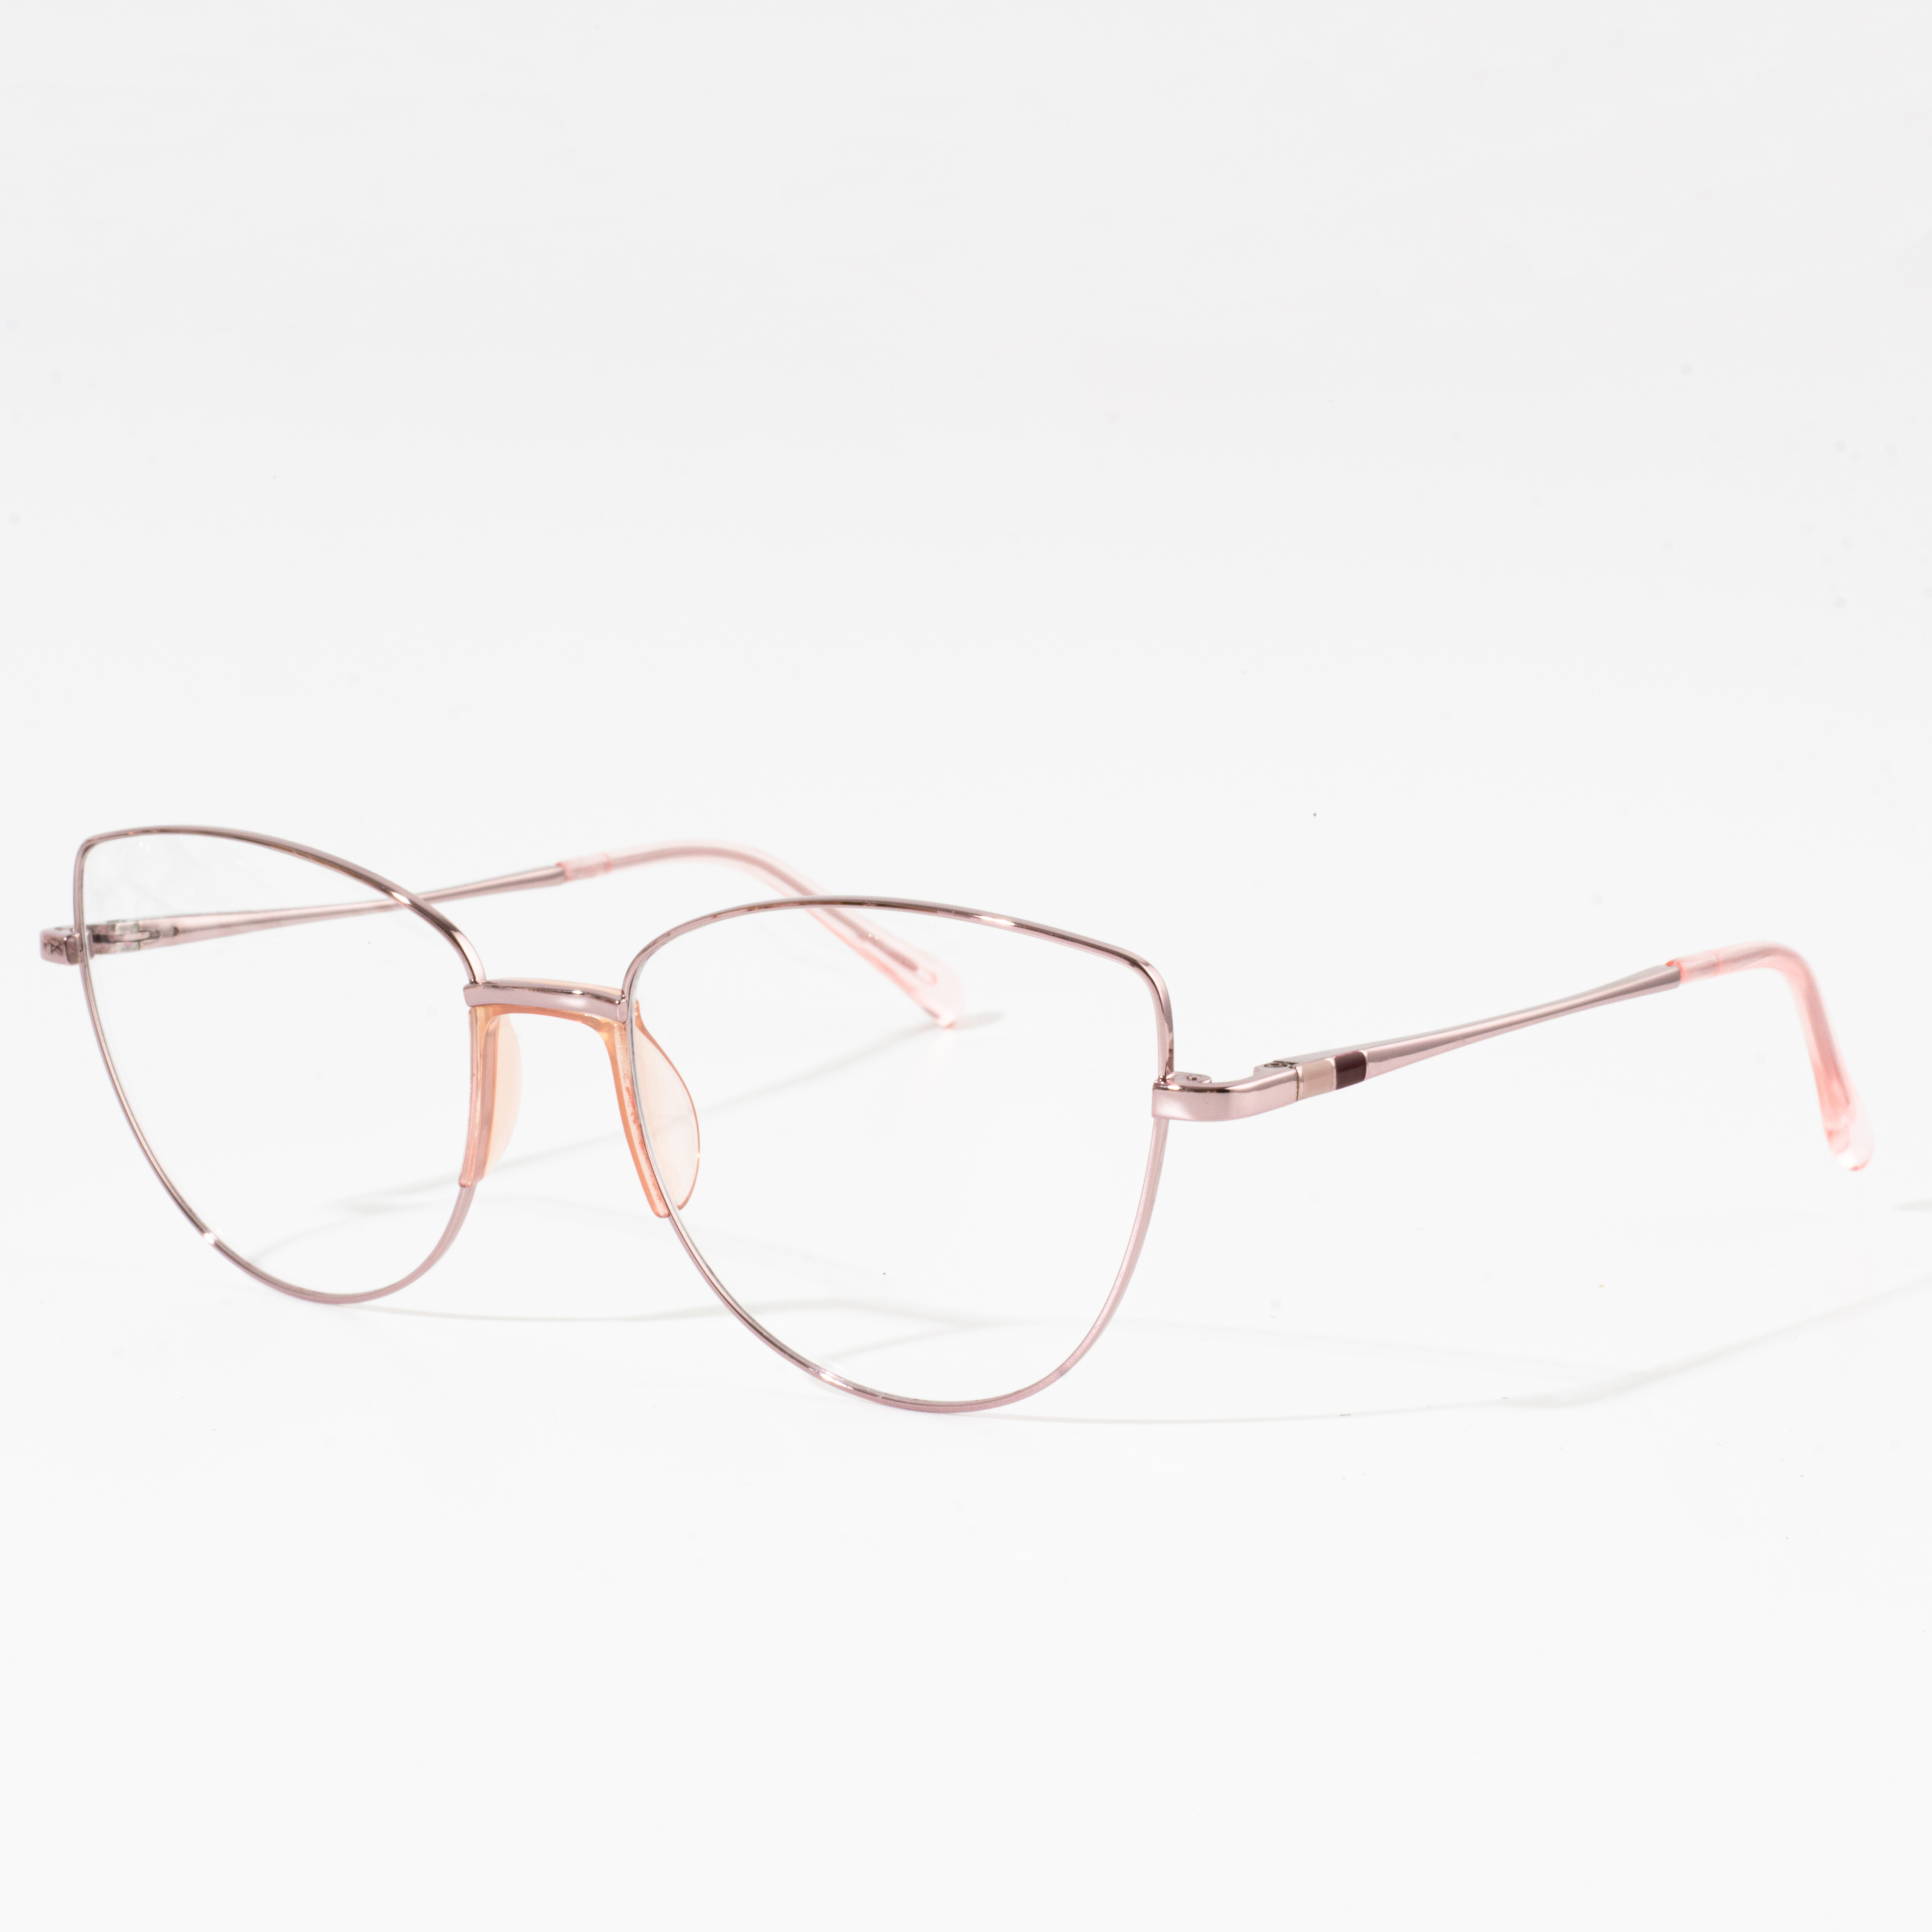 Rûne brillen frames